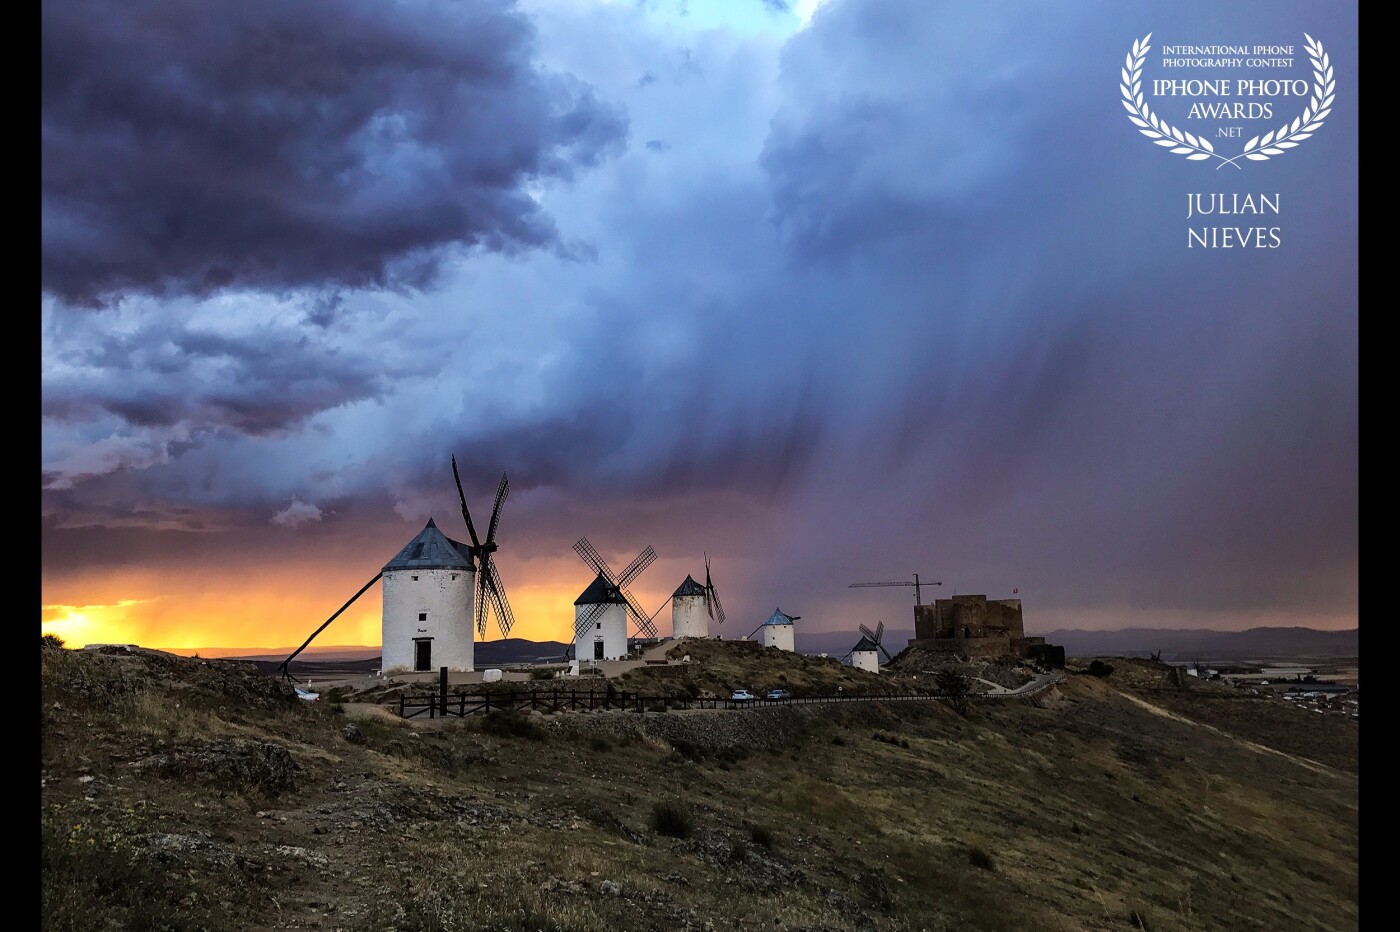 Atardecer de tormenta en un lugar emblemático de Castilla-La Mancha, como es el cerro Calderico con su Castillo y Molinos, situado en la localidad de Consuegra.